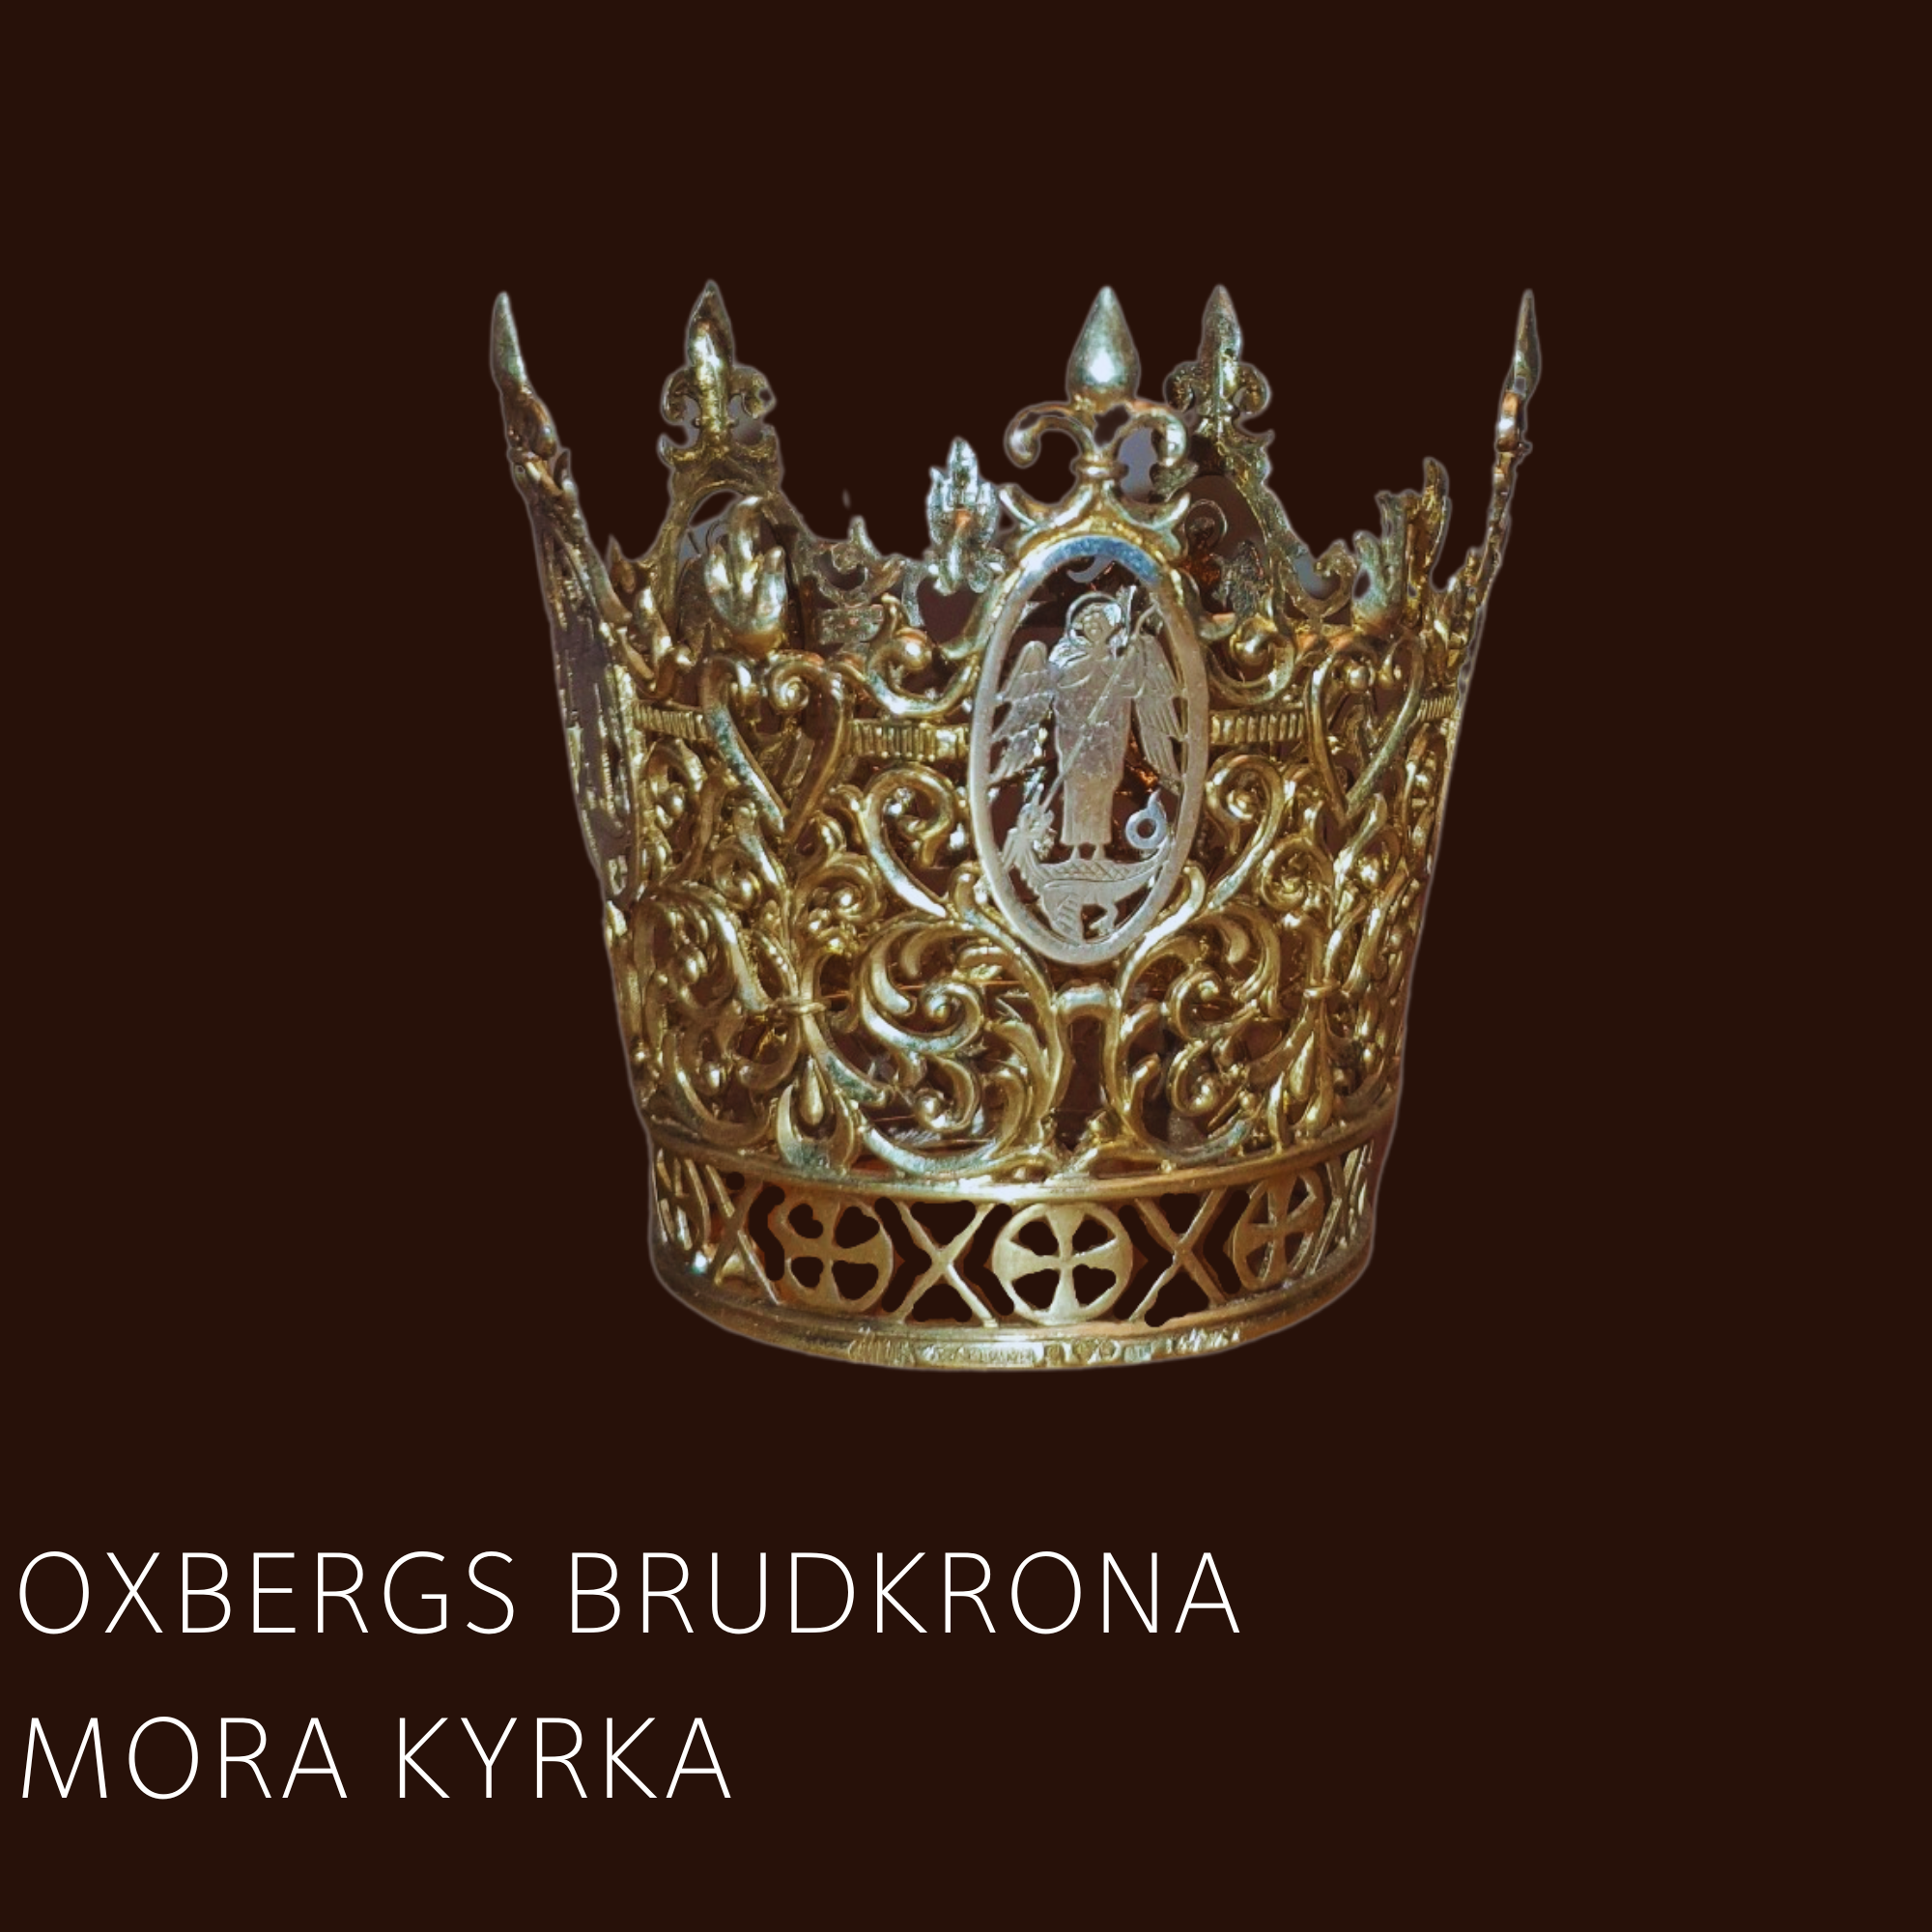 Oxbergskronan tillverkad av hovjuvelerare Lars Olhans. 